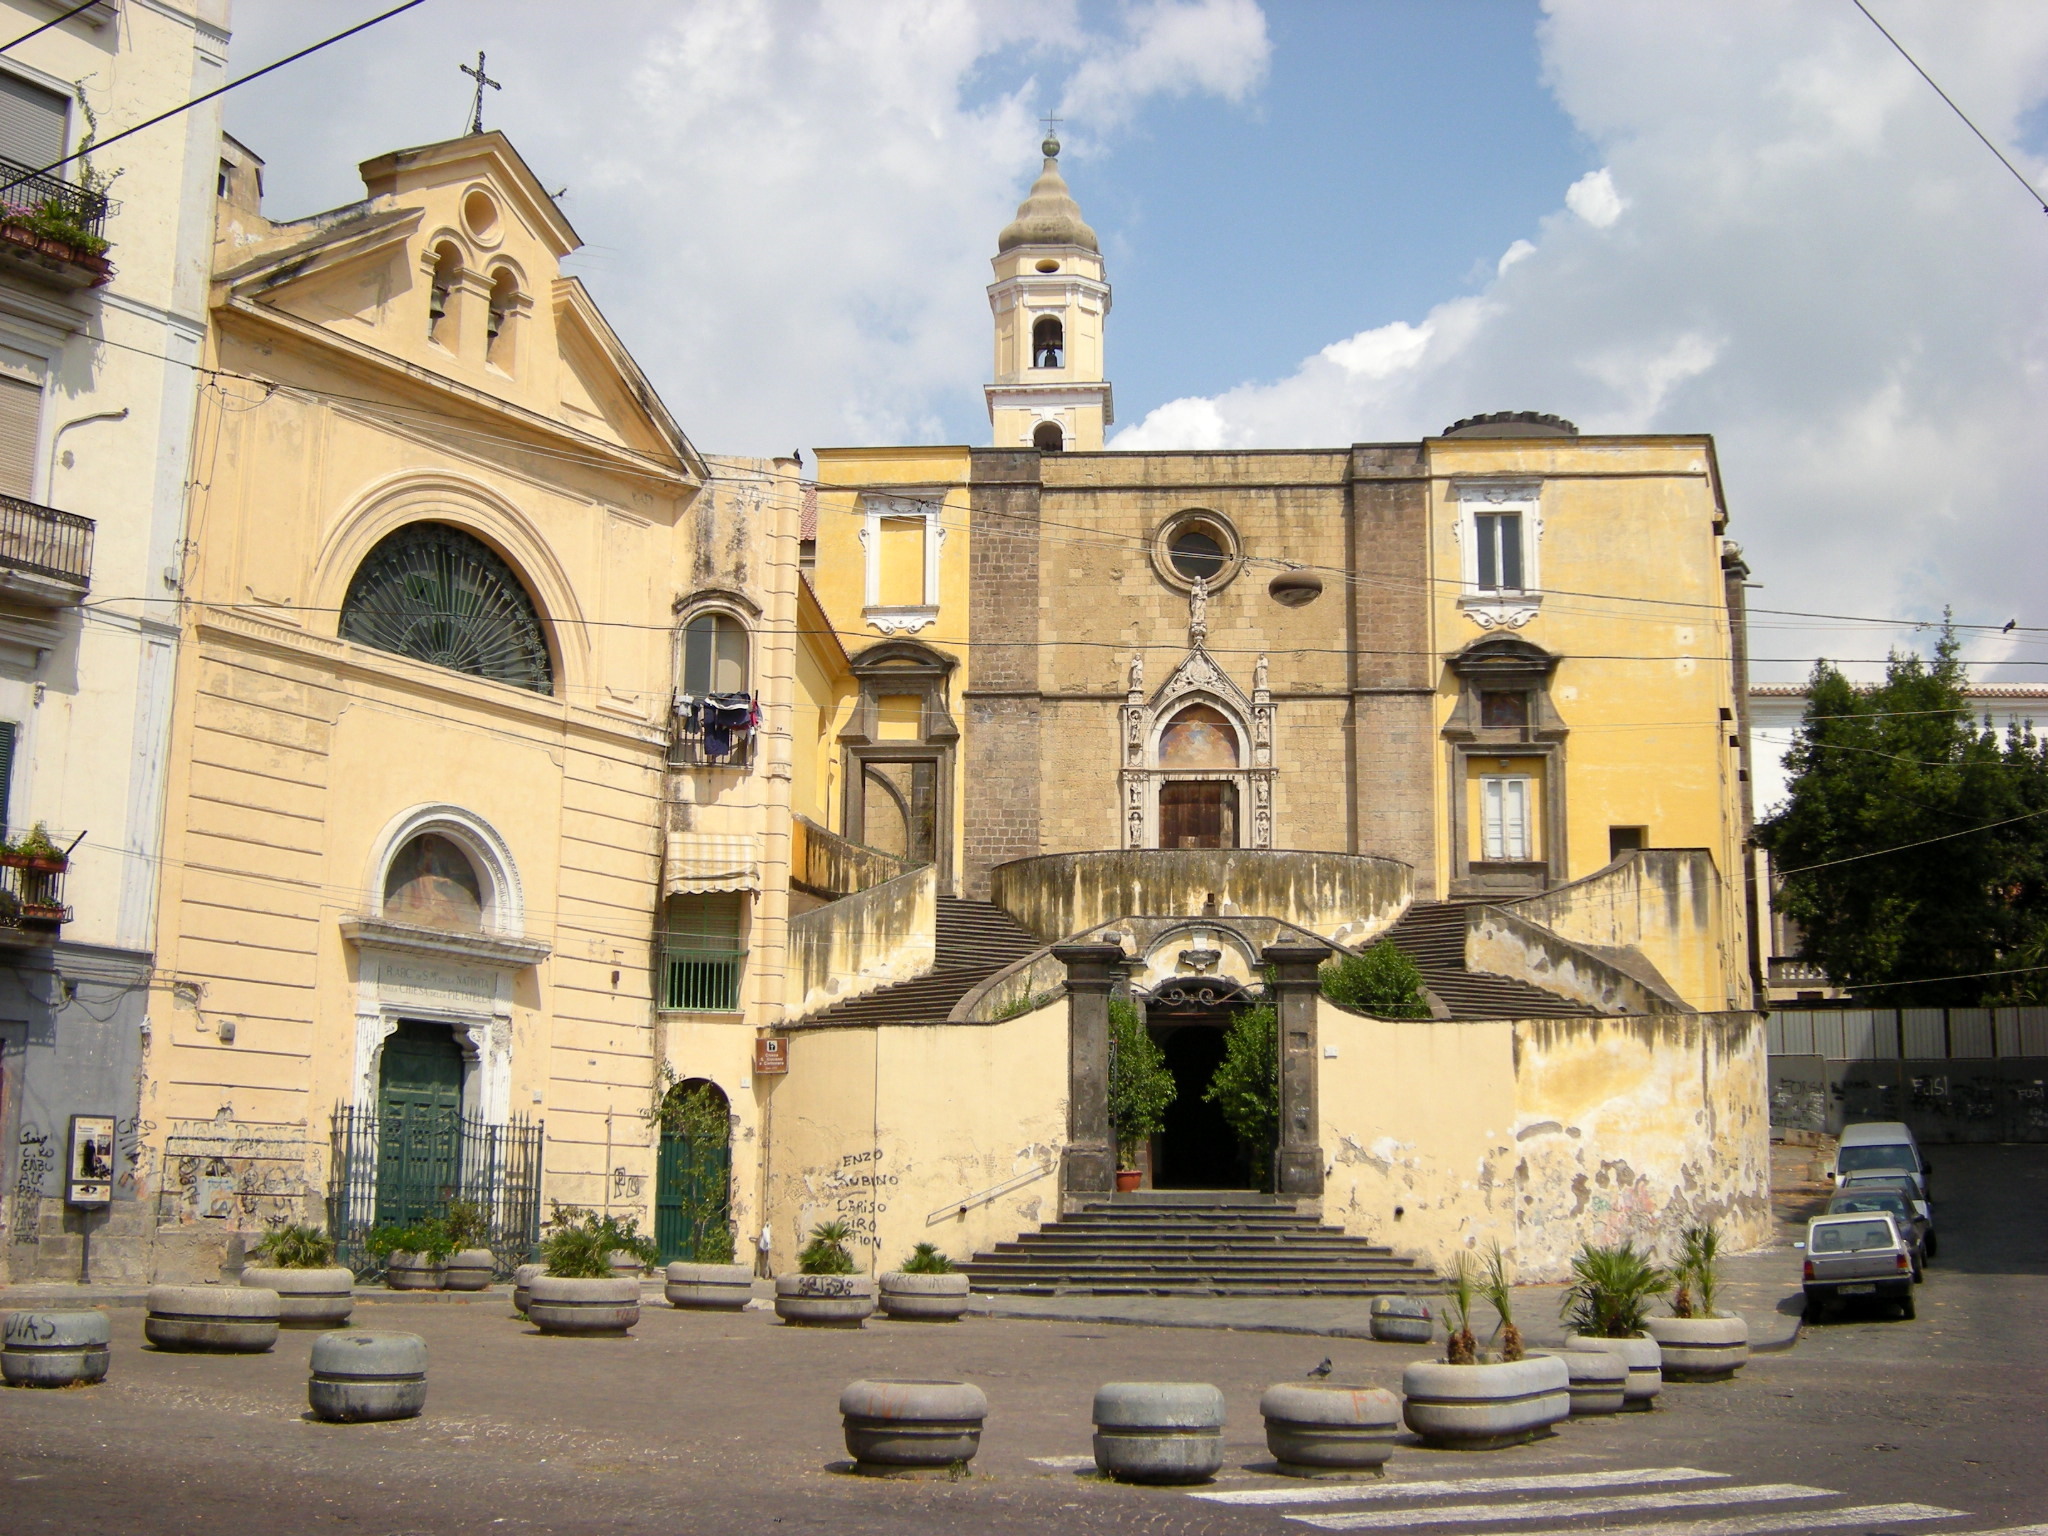 Iglesia de San Giovanni in Carbonara, reabriendo después de una parada de 18 meses